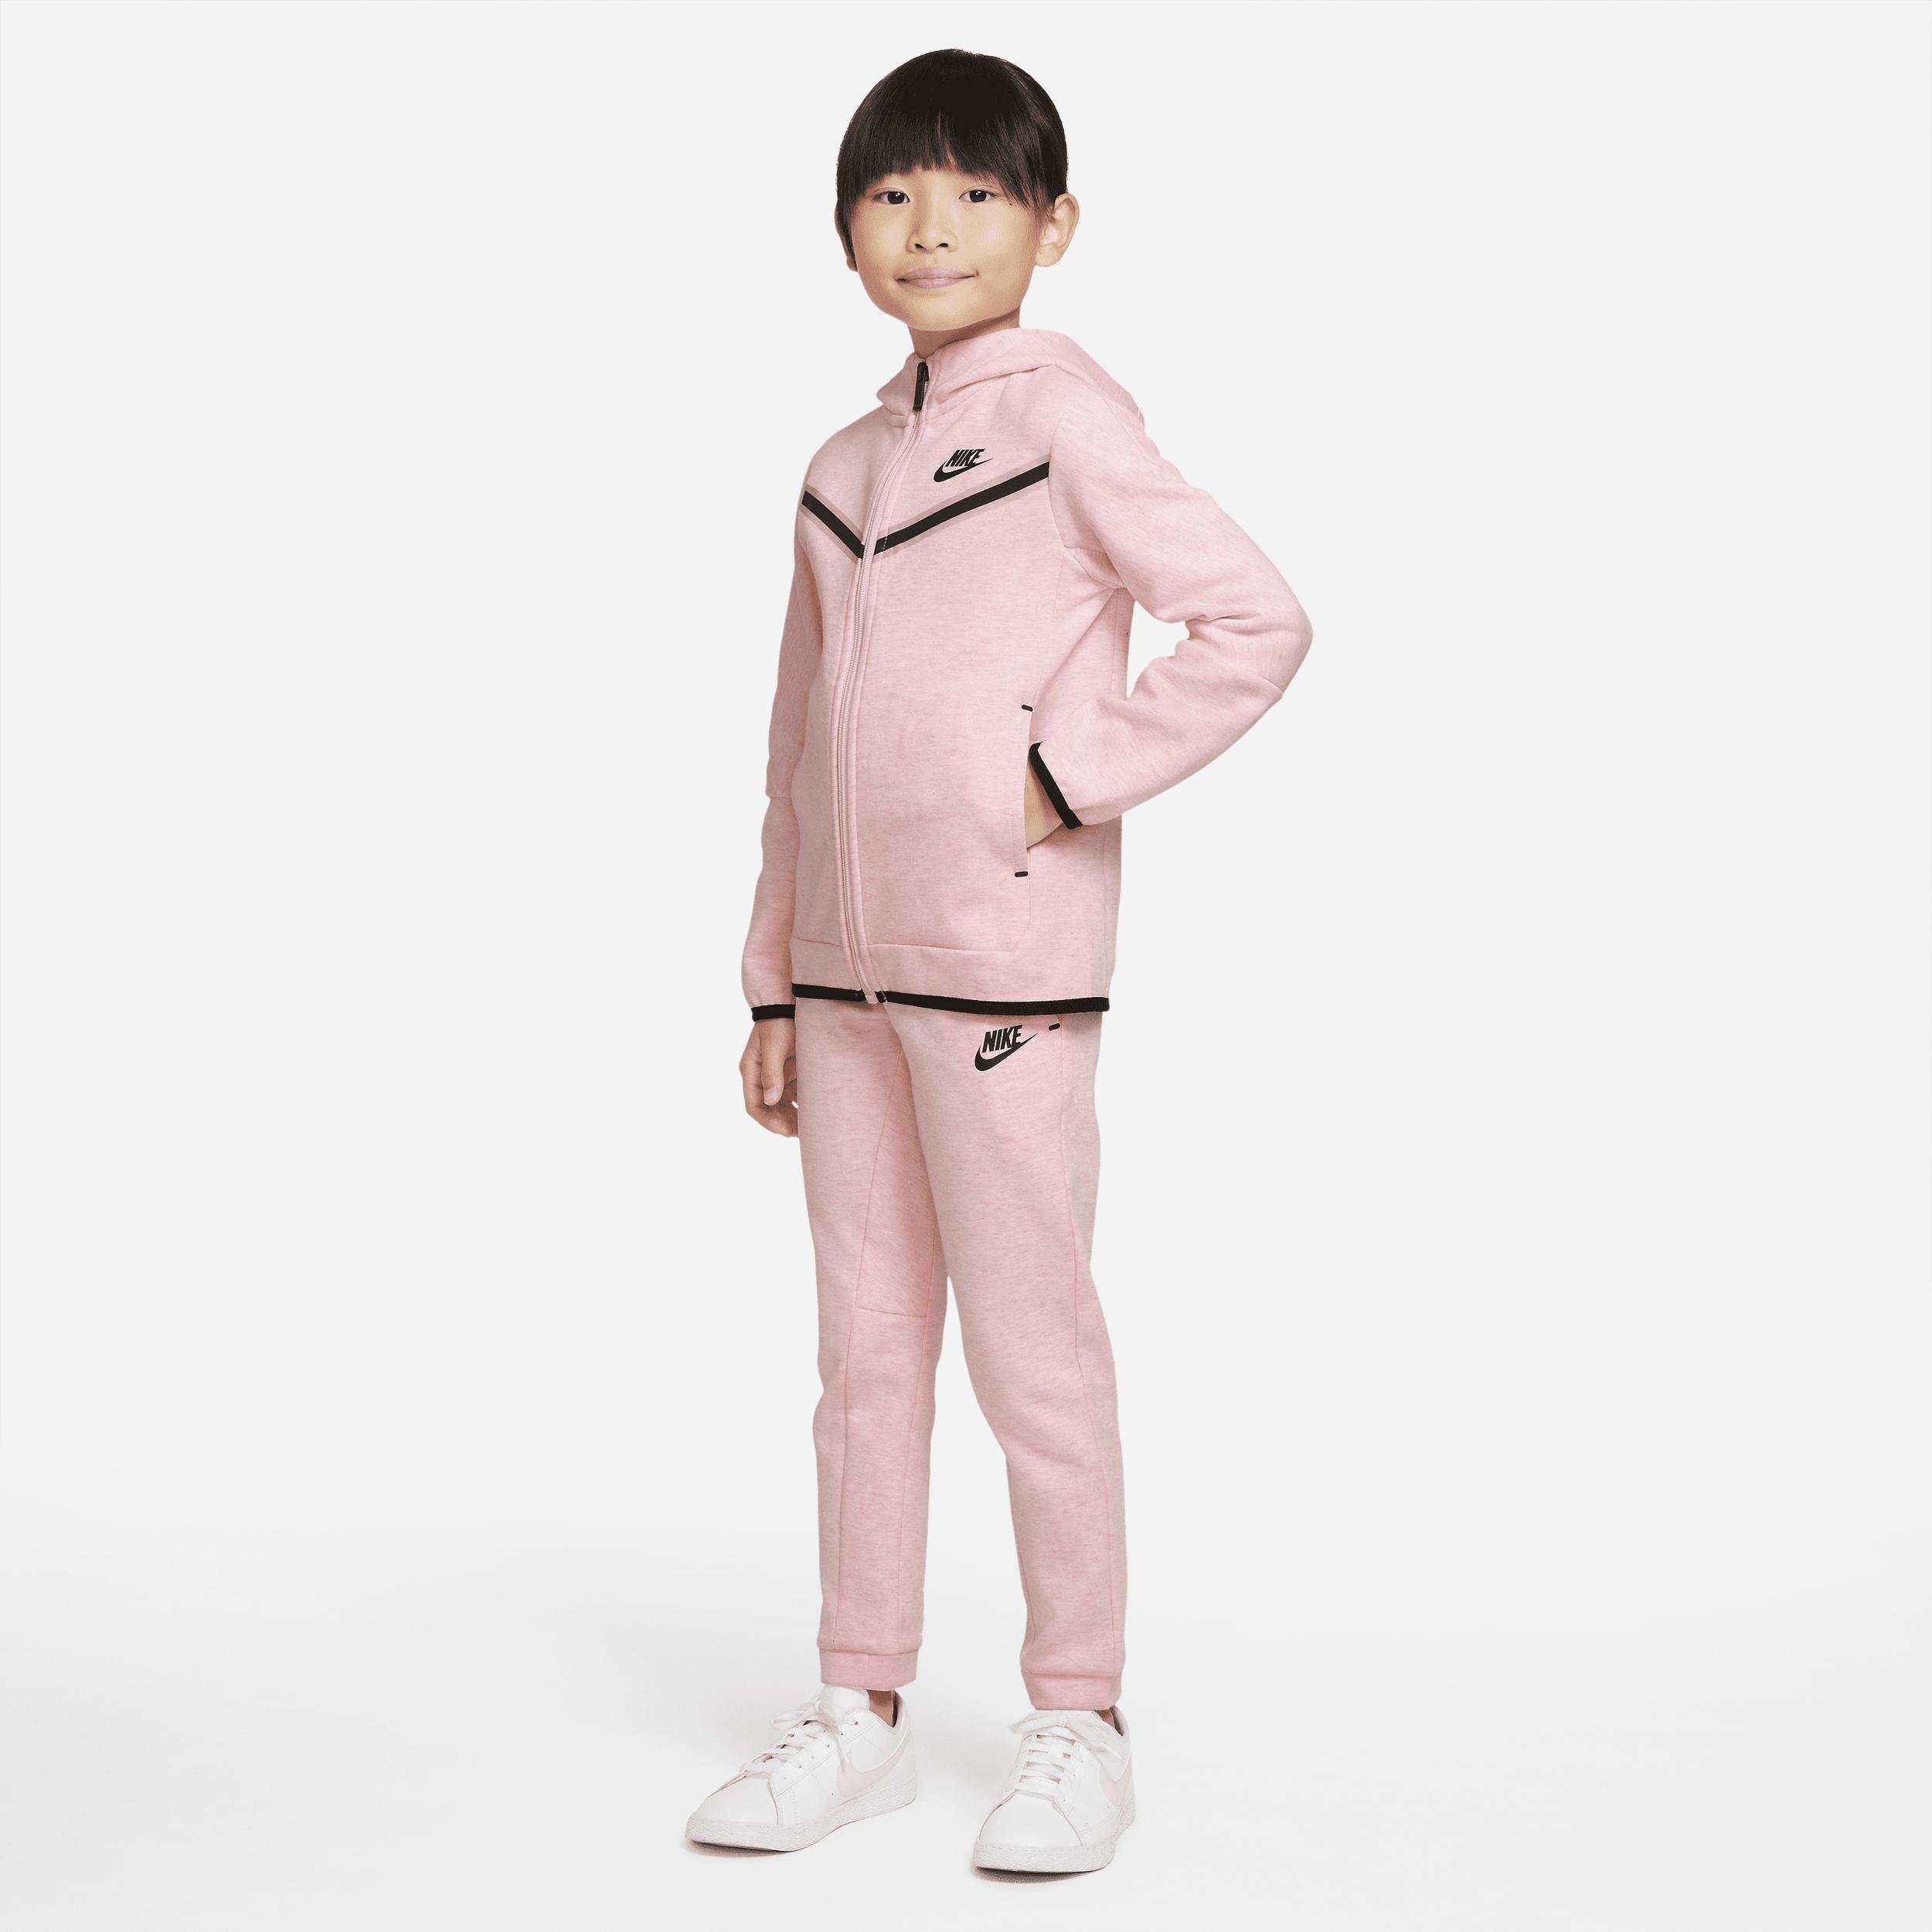 Nike Sportswear Tech Fleece Little Kids' Jacket and Pants Set by NIKE